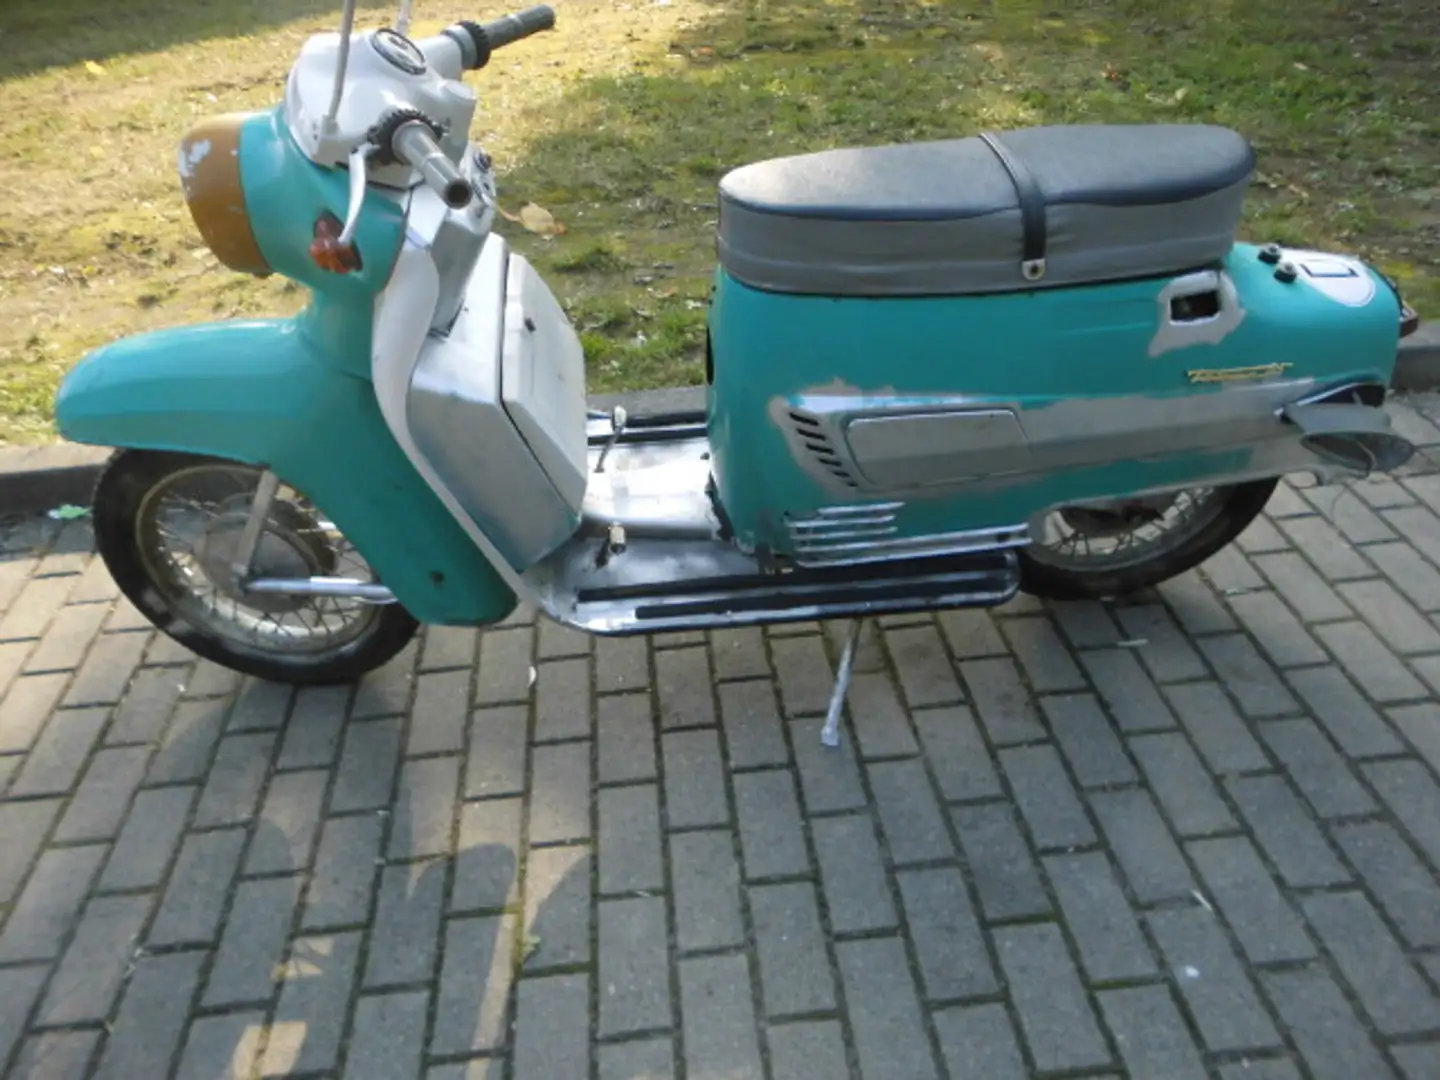 Jawa Tatran Roller Roller/Scooter in Grün gebraucht in Calau für € 1.200,-